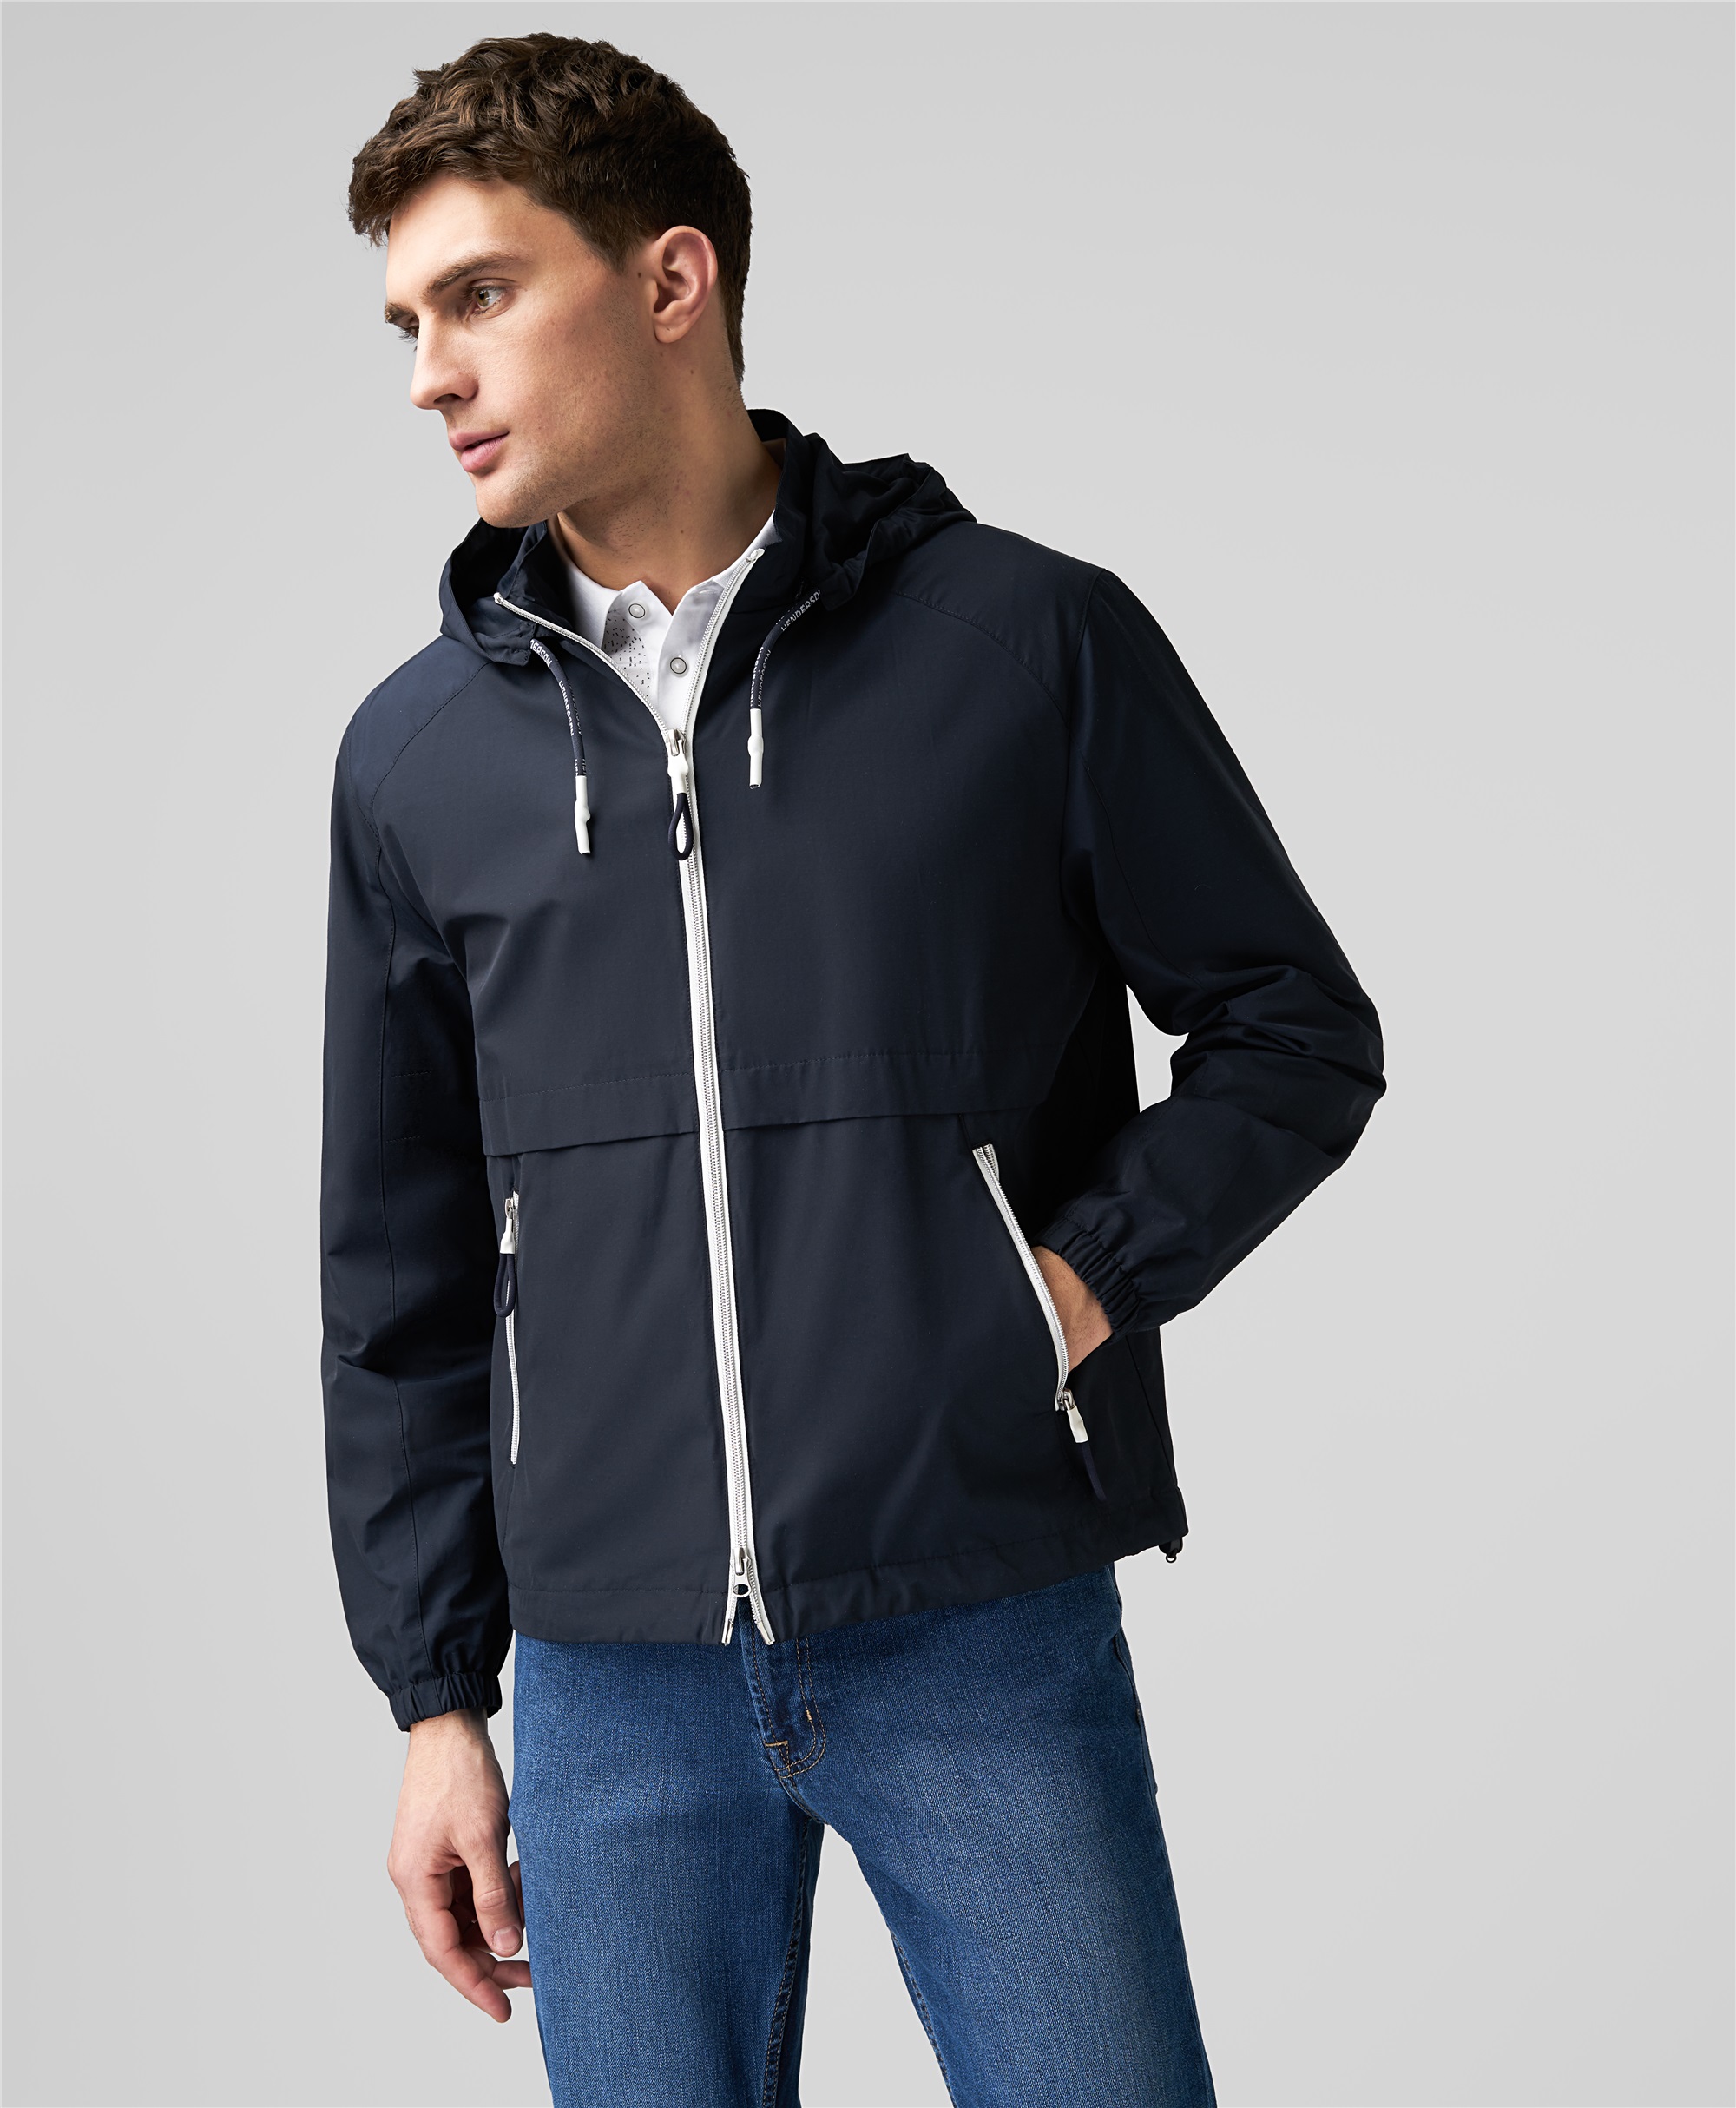 Легкая куртка ветровка с контрастными молниями в тёмно-синем цвете JK-0329 DNAVY- купить в HENDERSON.RU, цена 7 995 ₽